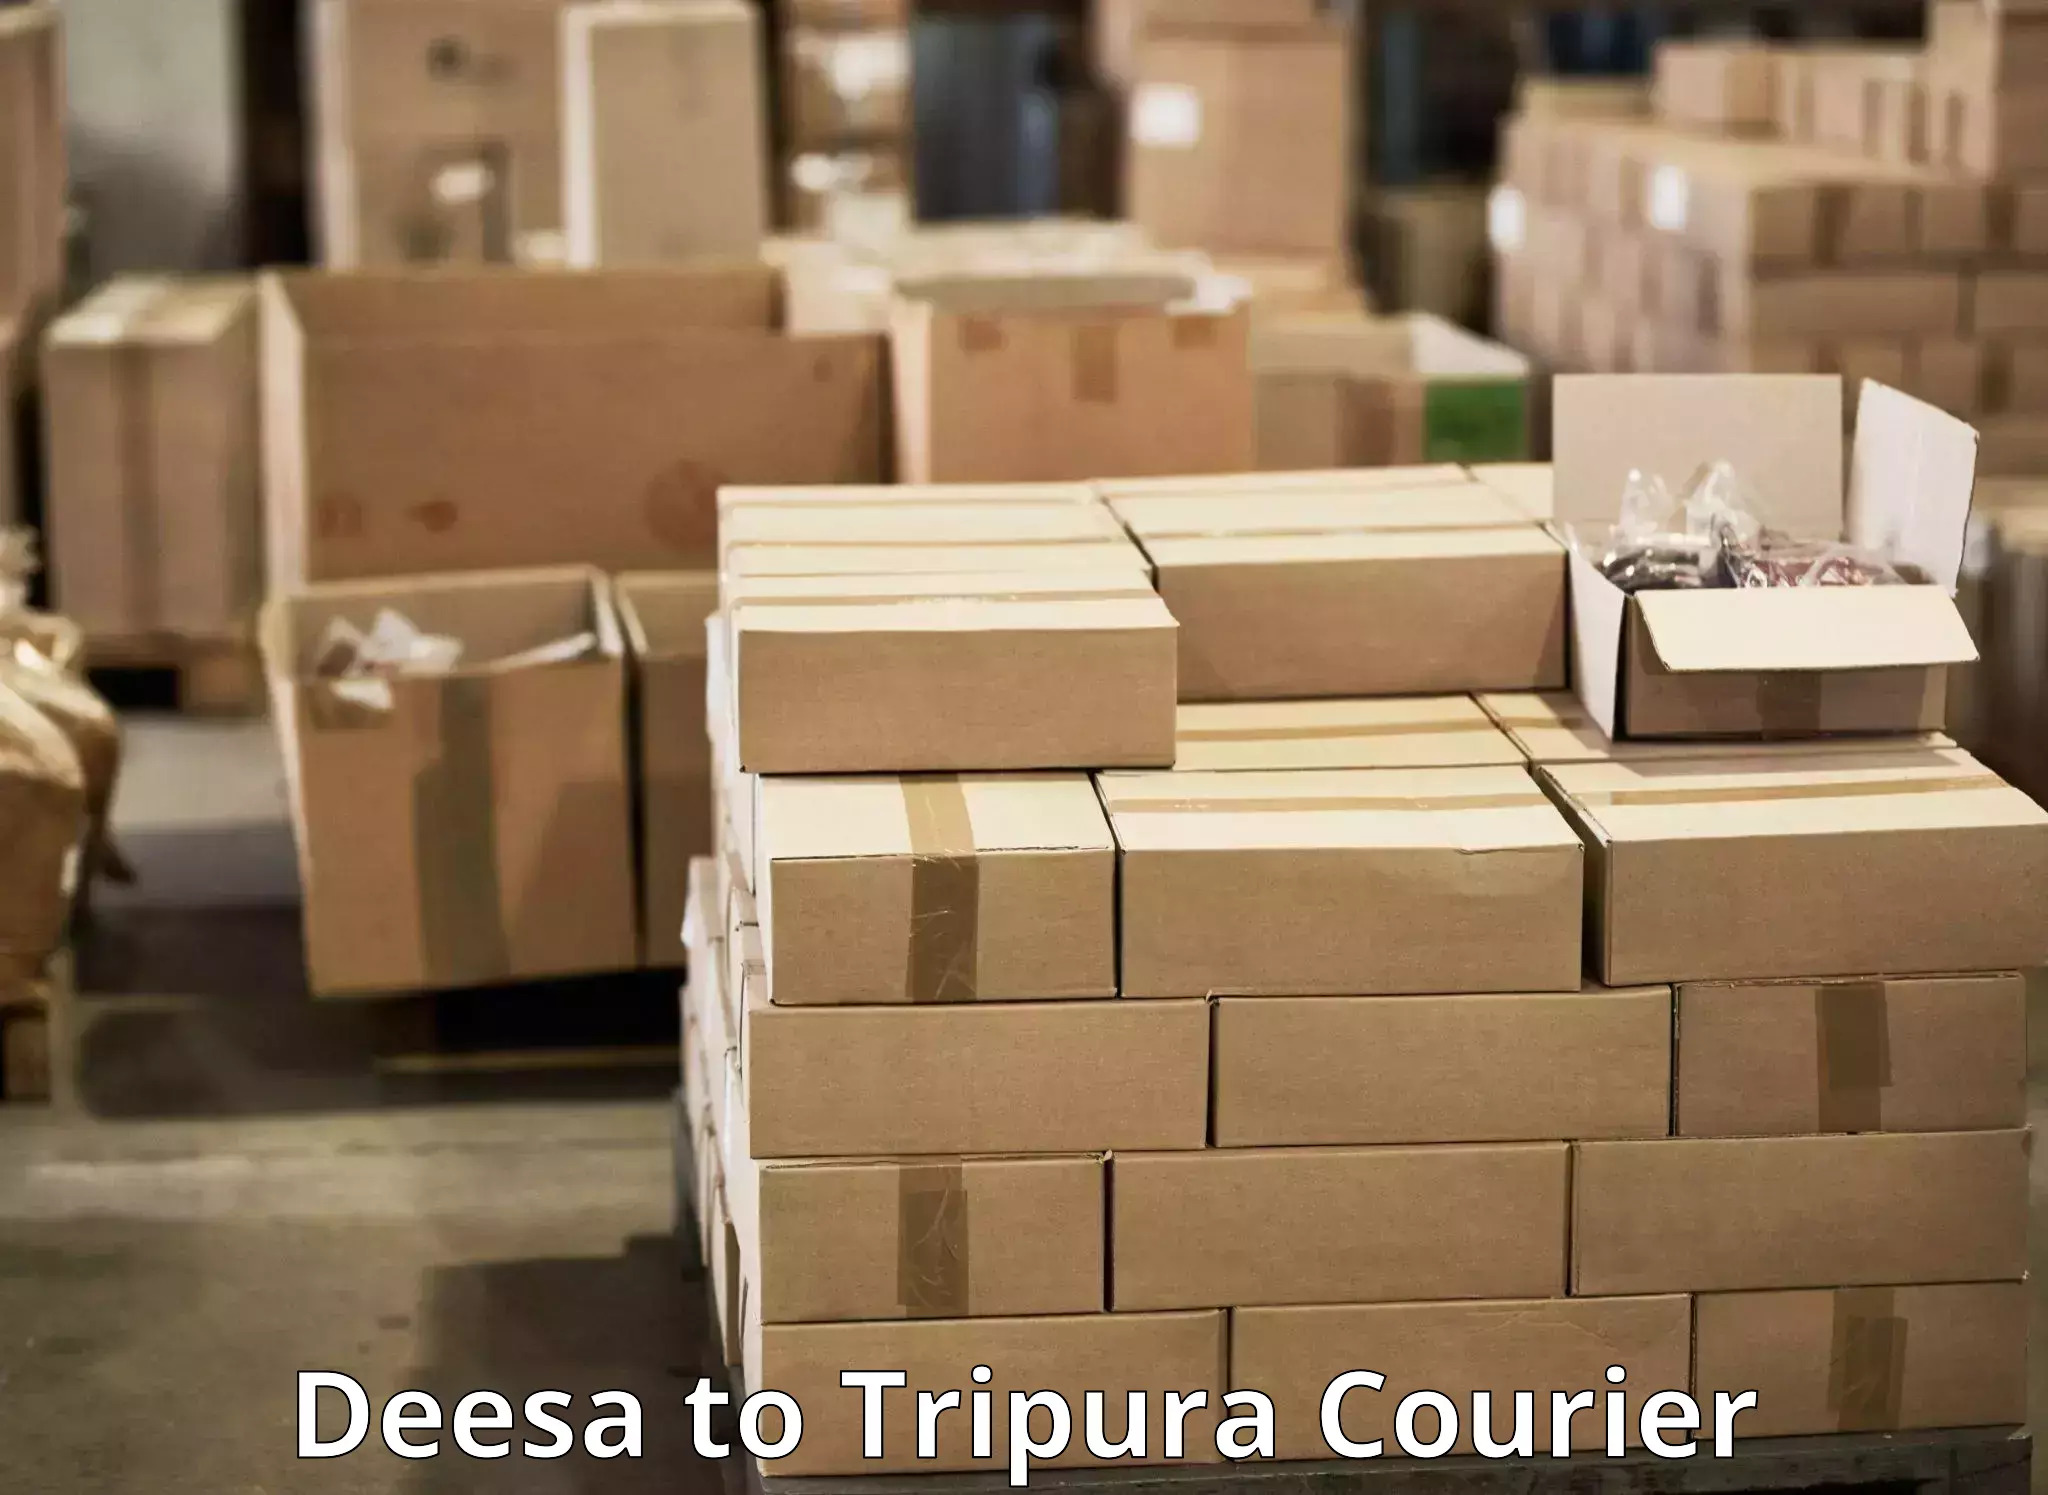 Express logistics service Deesa to Aambasa